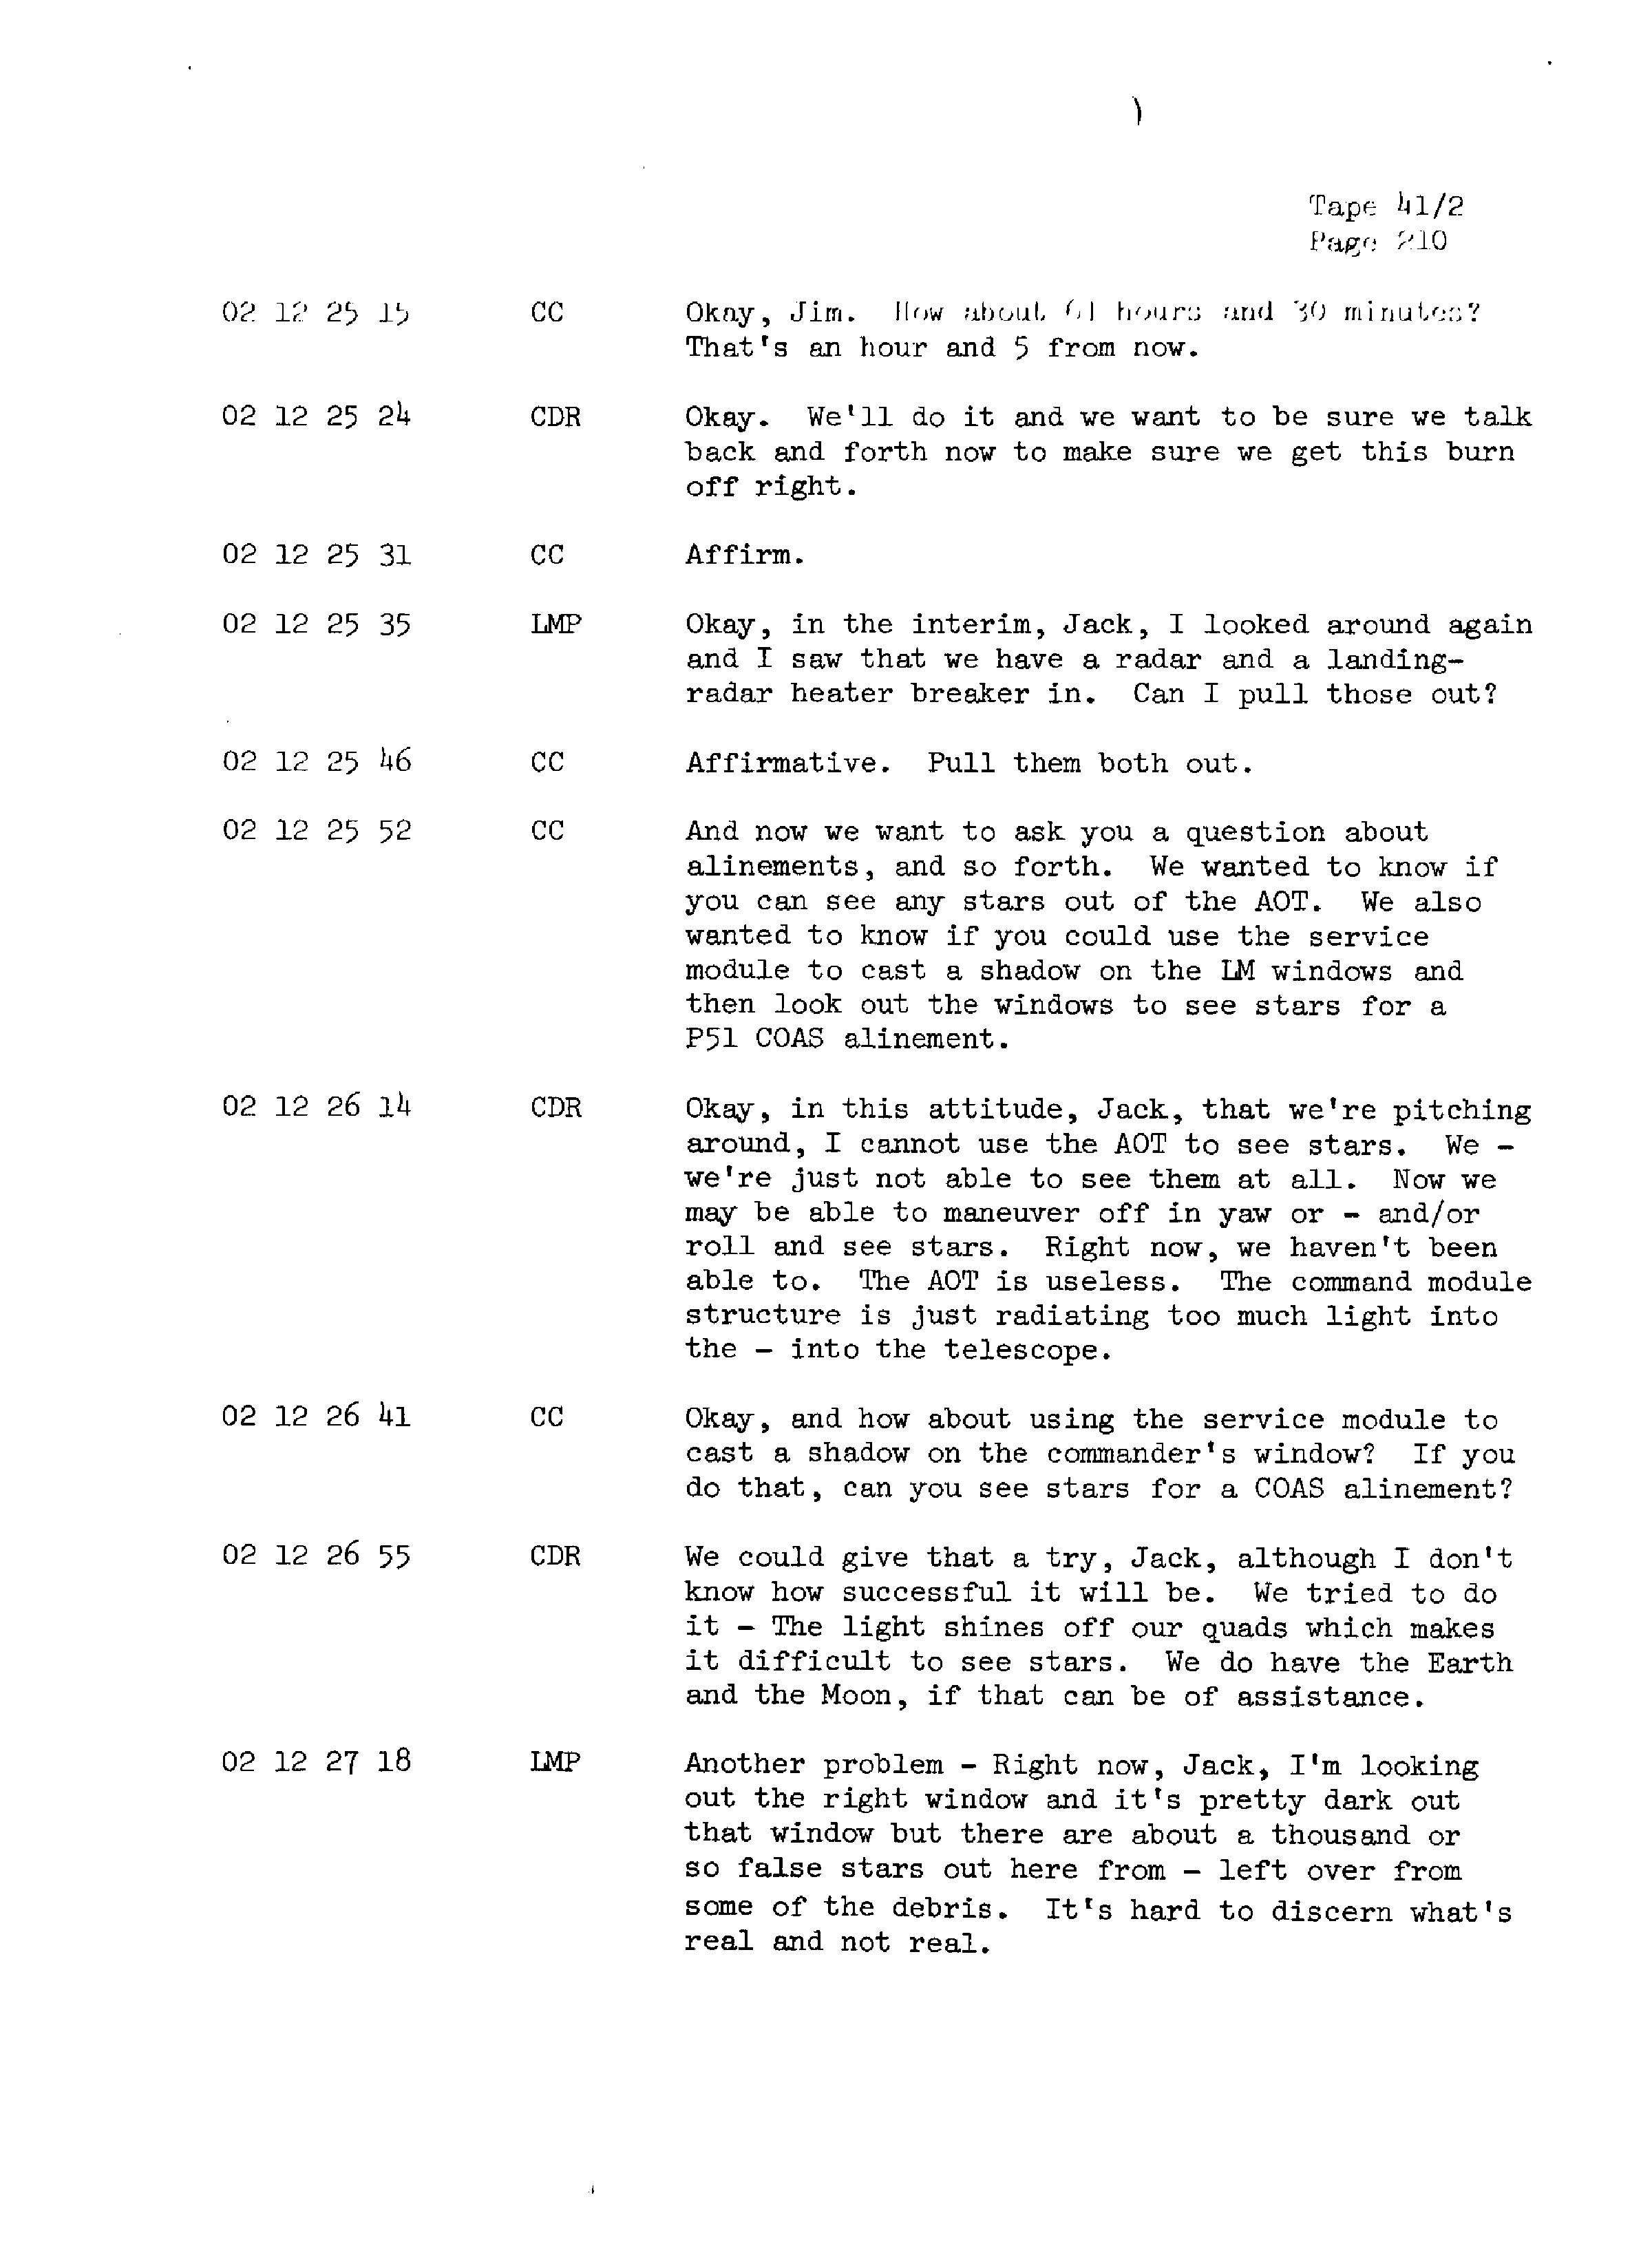 Page 217 of Apollo 13’s original transcript